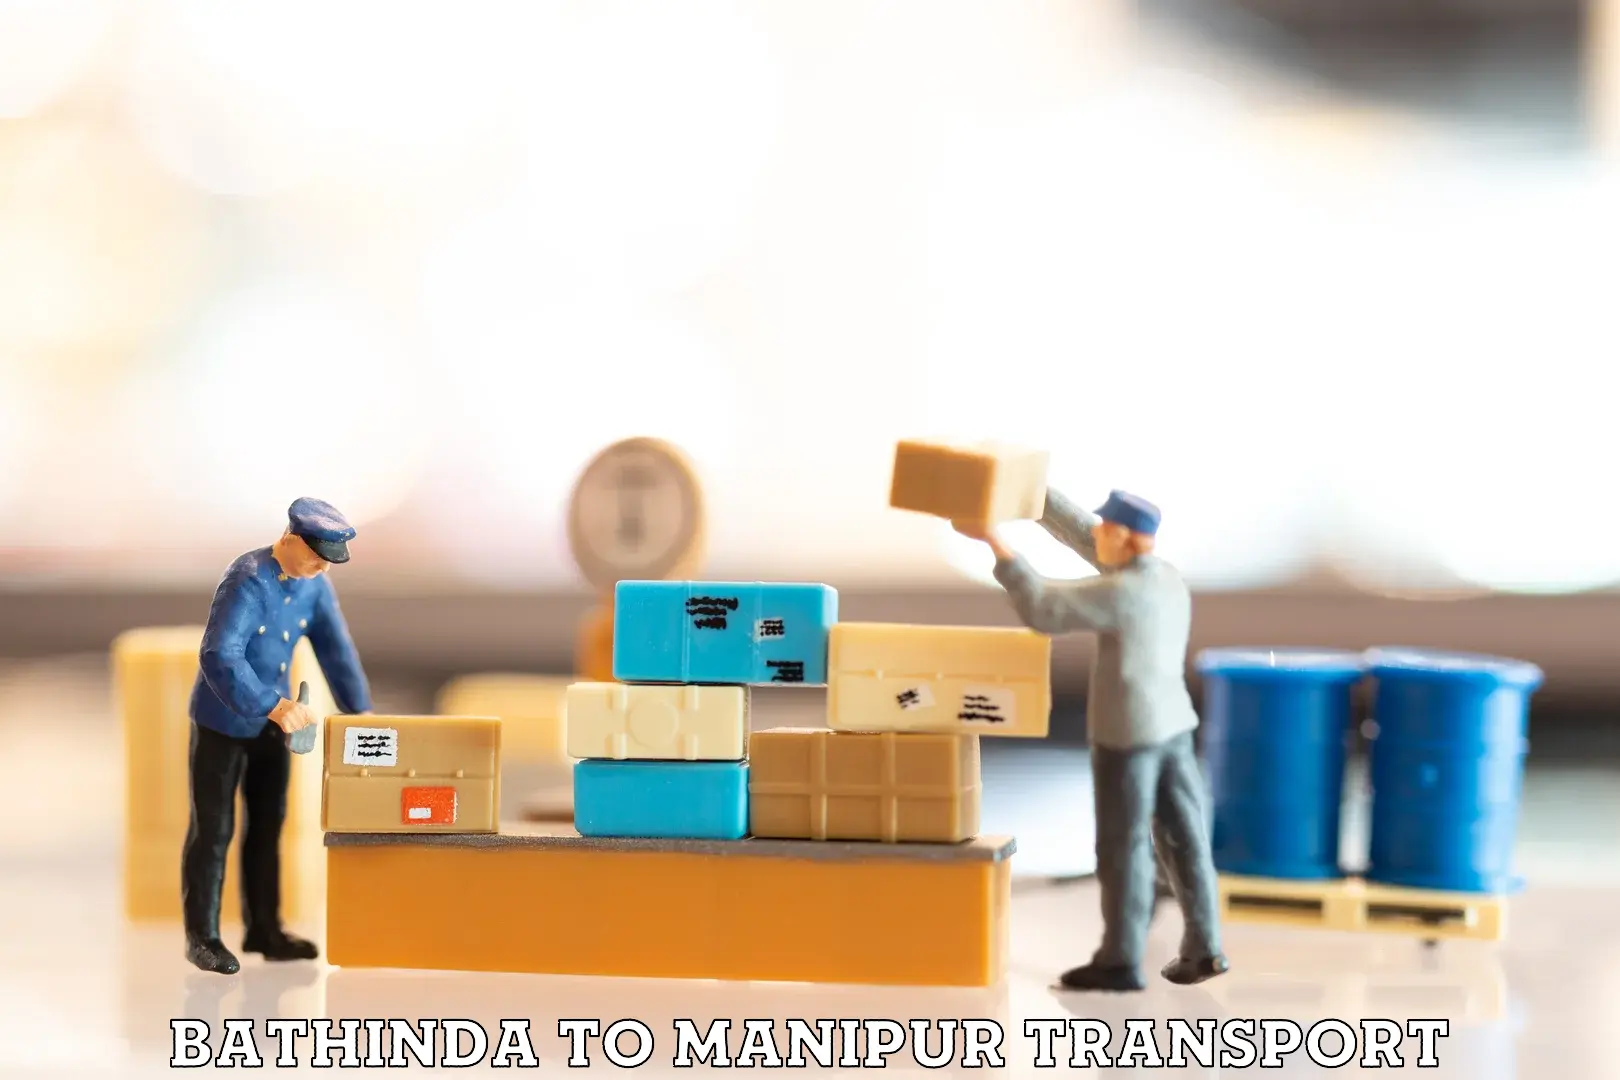 Furniture transport service Bathinda to Moirang